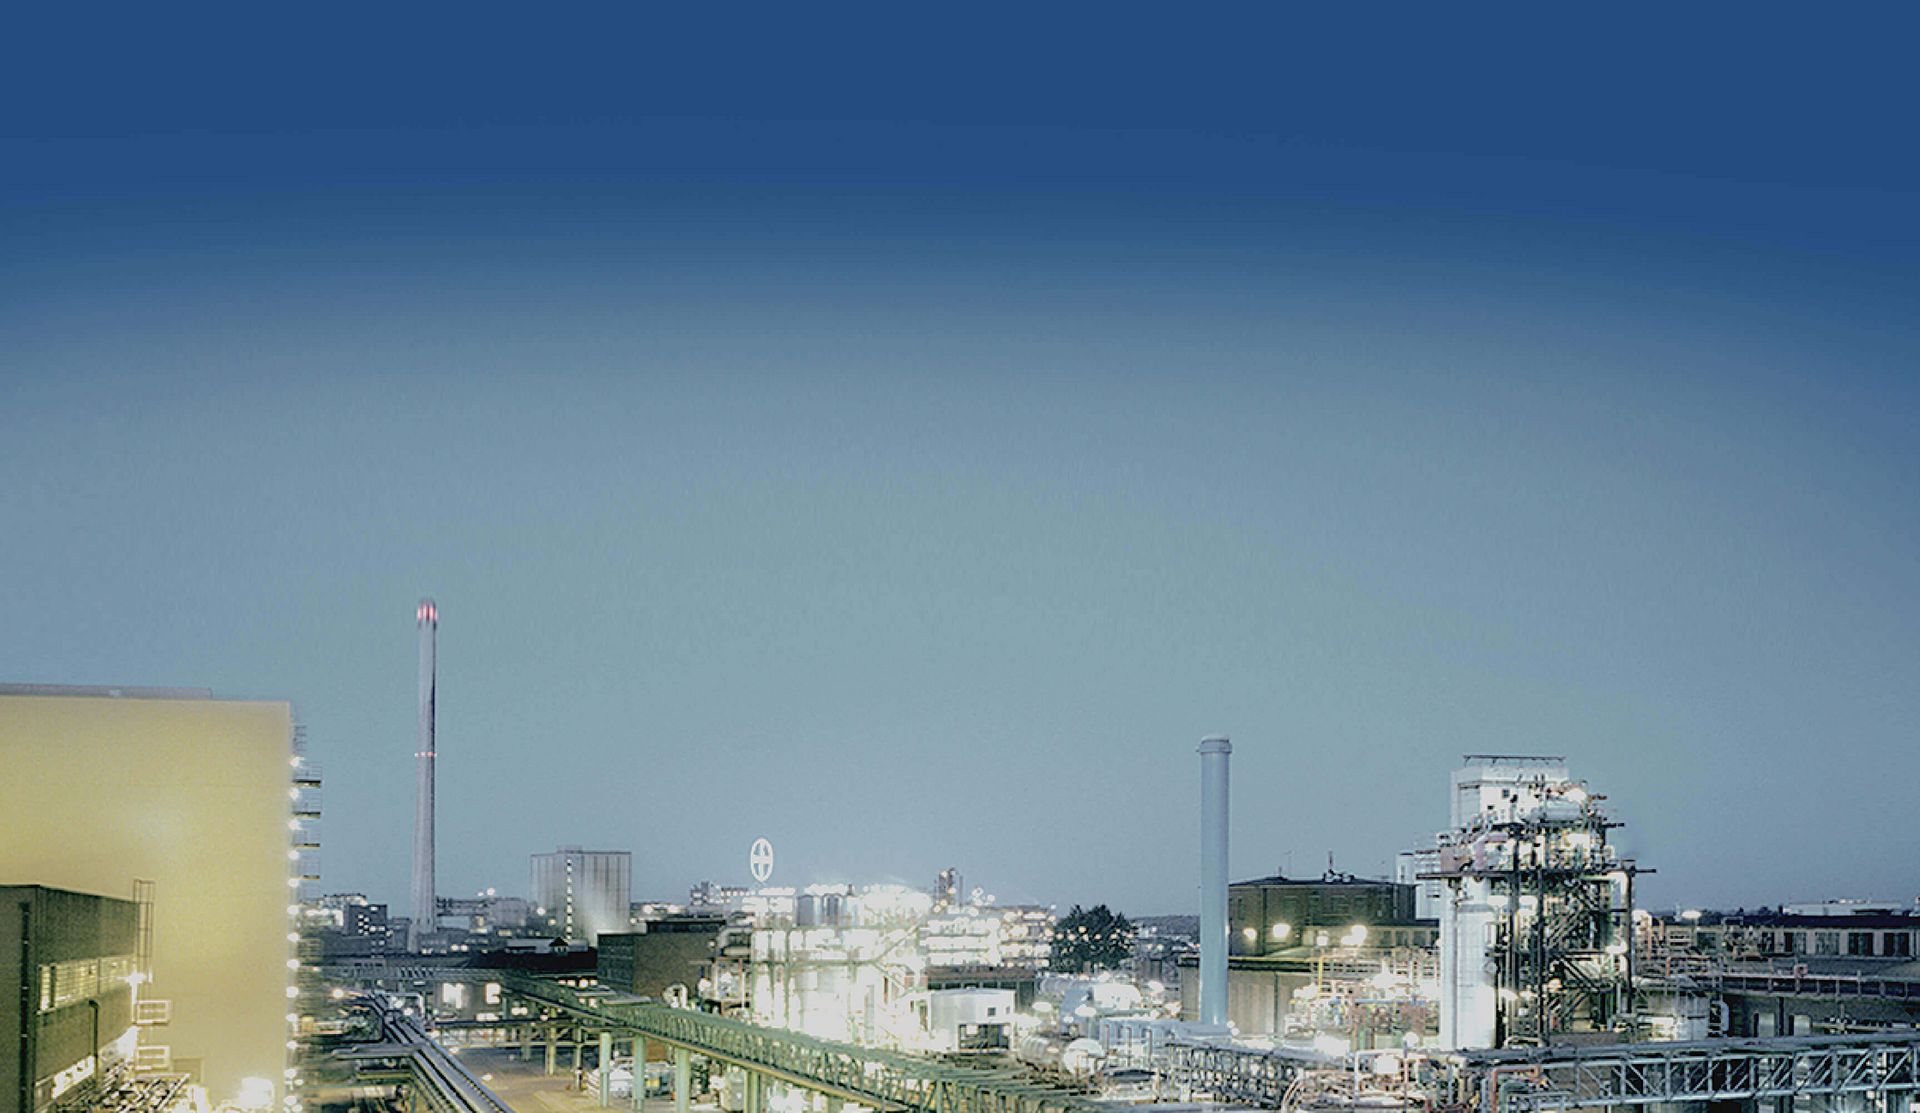 Panoramabild eines Industrieparks mit blauem Himmel